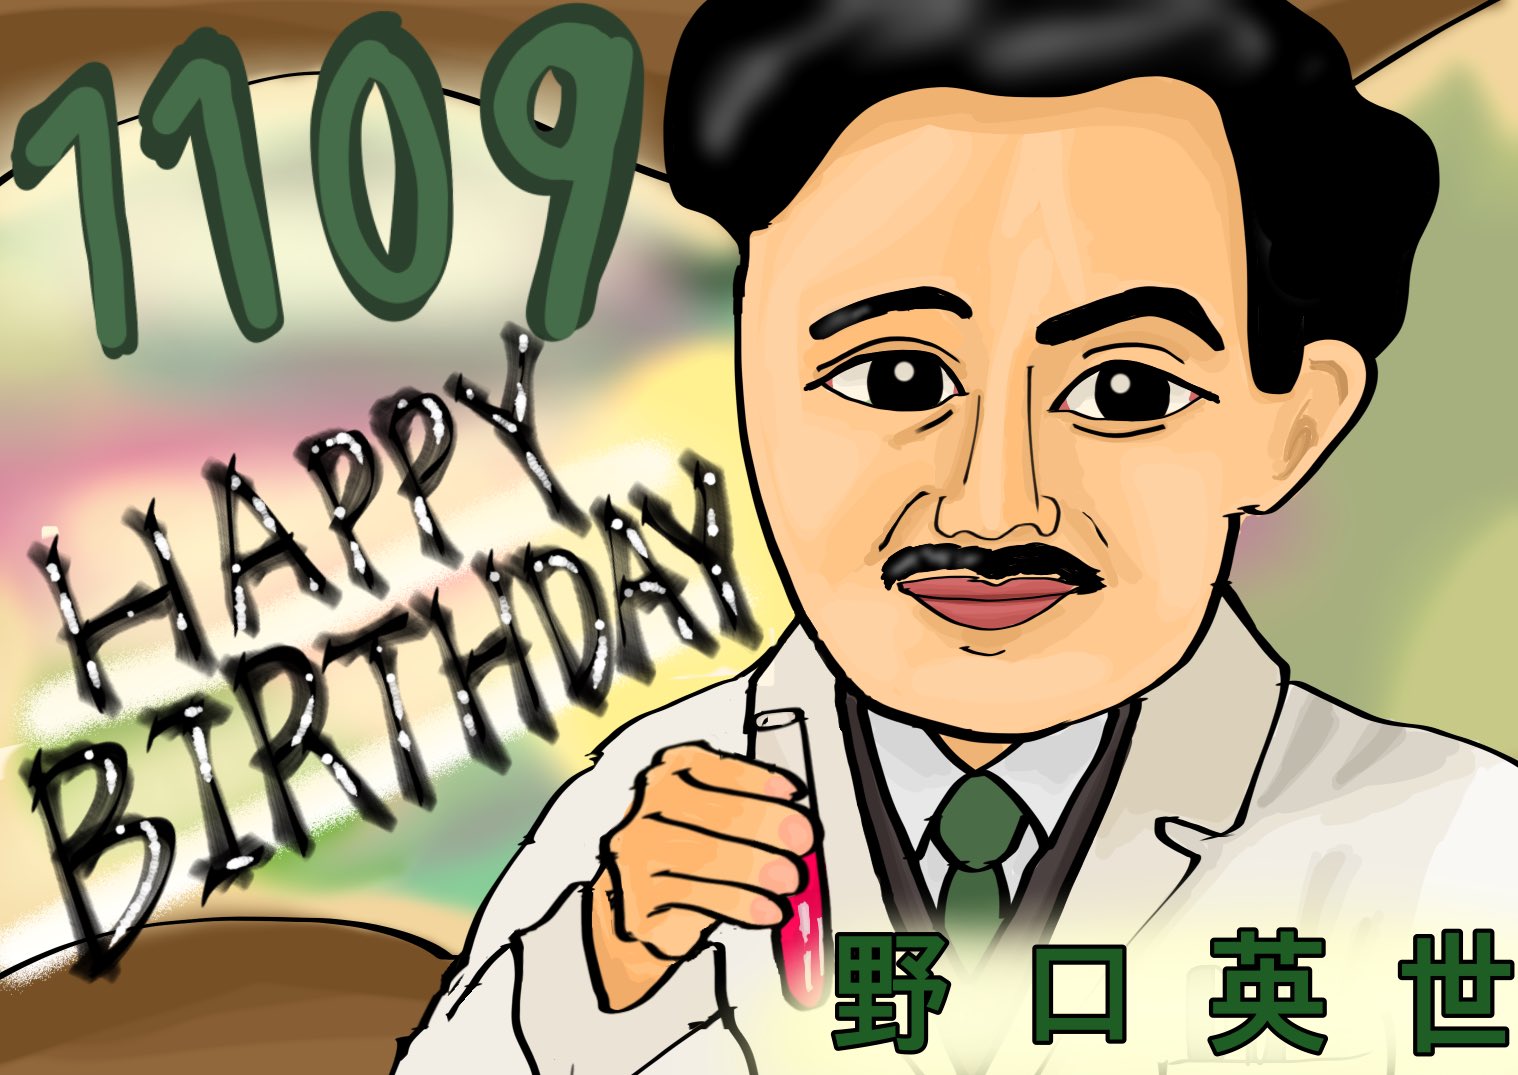 あずsaku 自由な画家 11月9日は 日本の医師でもあり細菌学者でもある 野口英世 さんの お誕生日 です お誕生日おめでとうございます Happybirthday イラスト 似顔絵 T Co 0sbcb8ikg4 Twitter